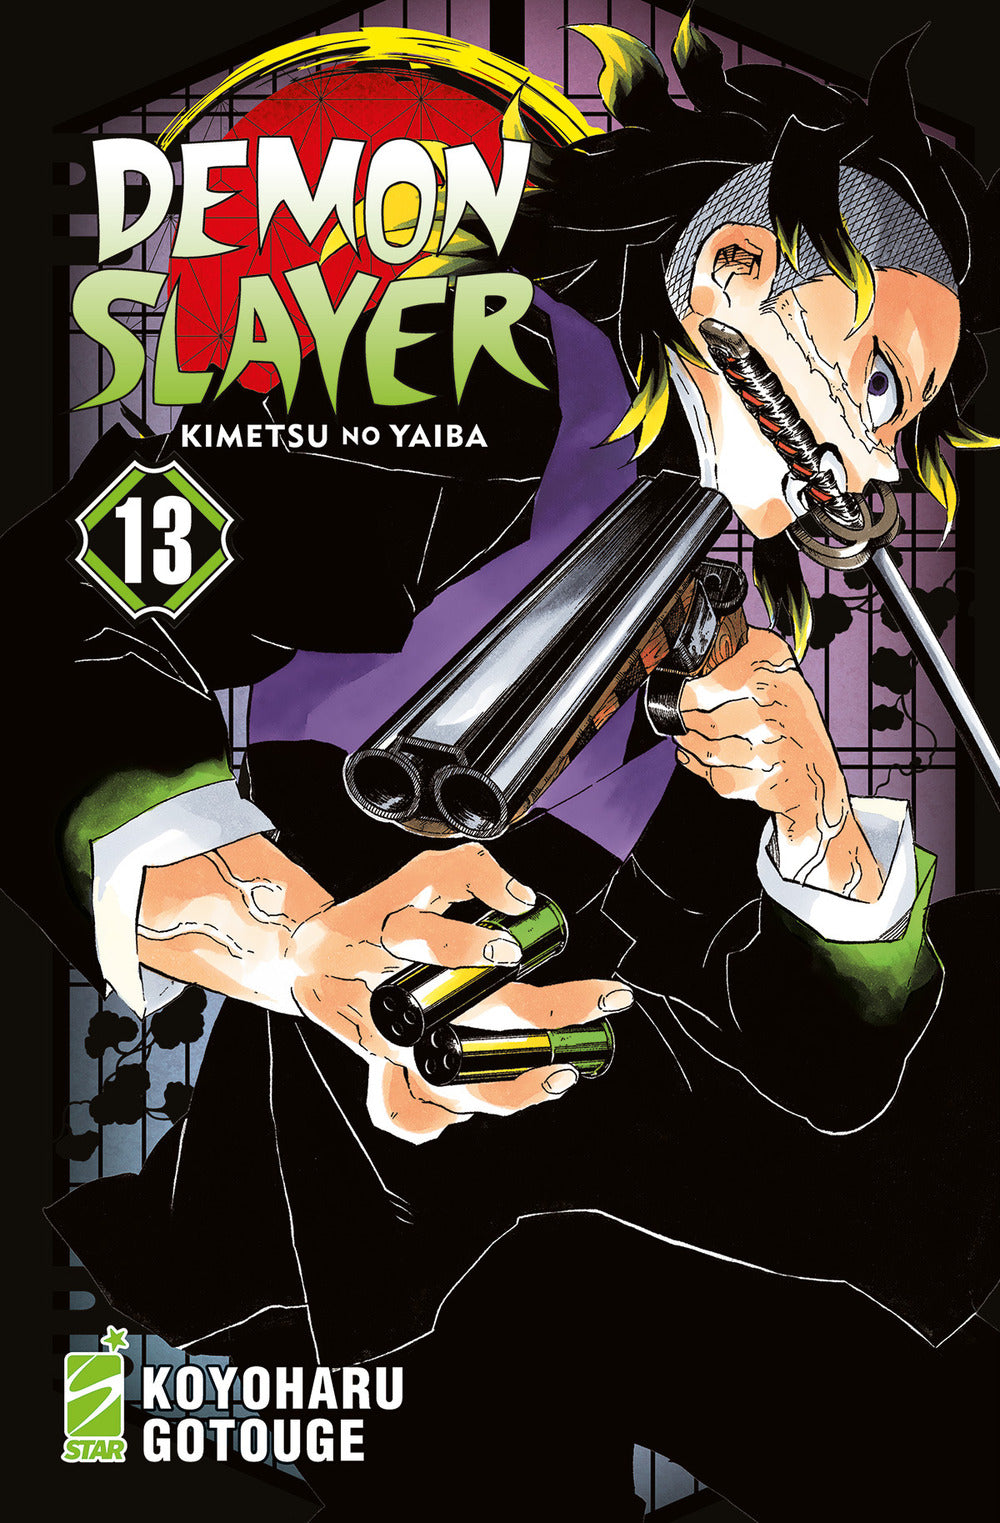 Demon slayer. Kimetsu no yaiba. Vol. 13.